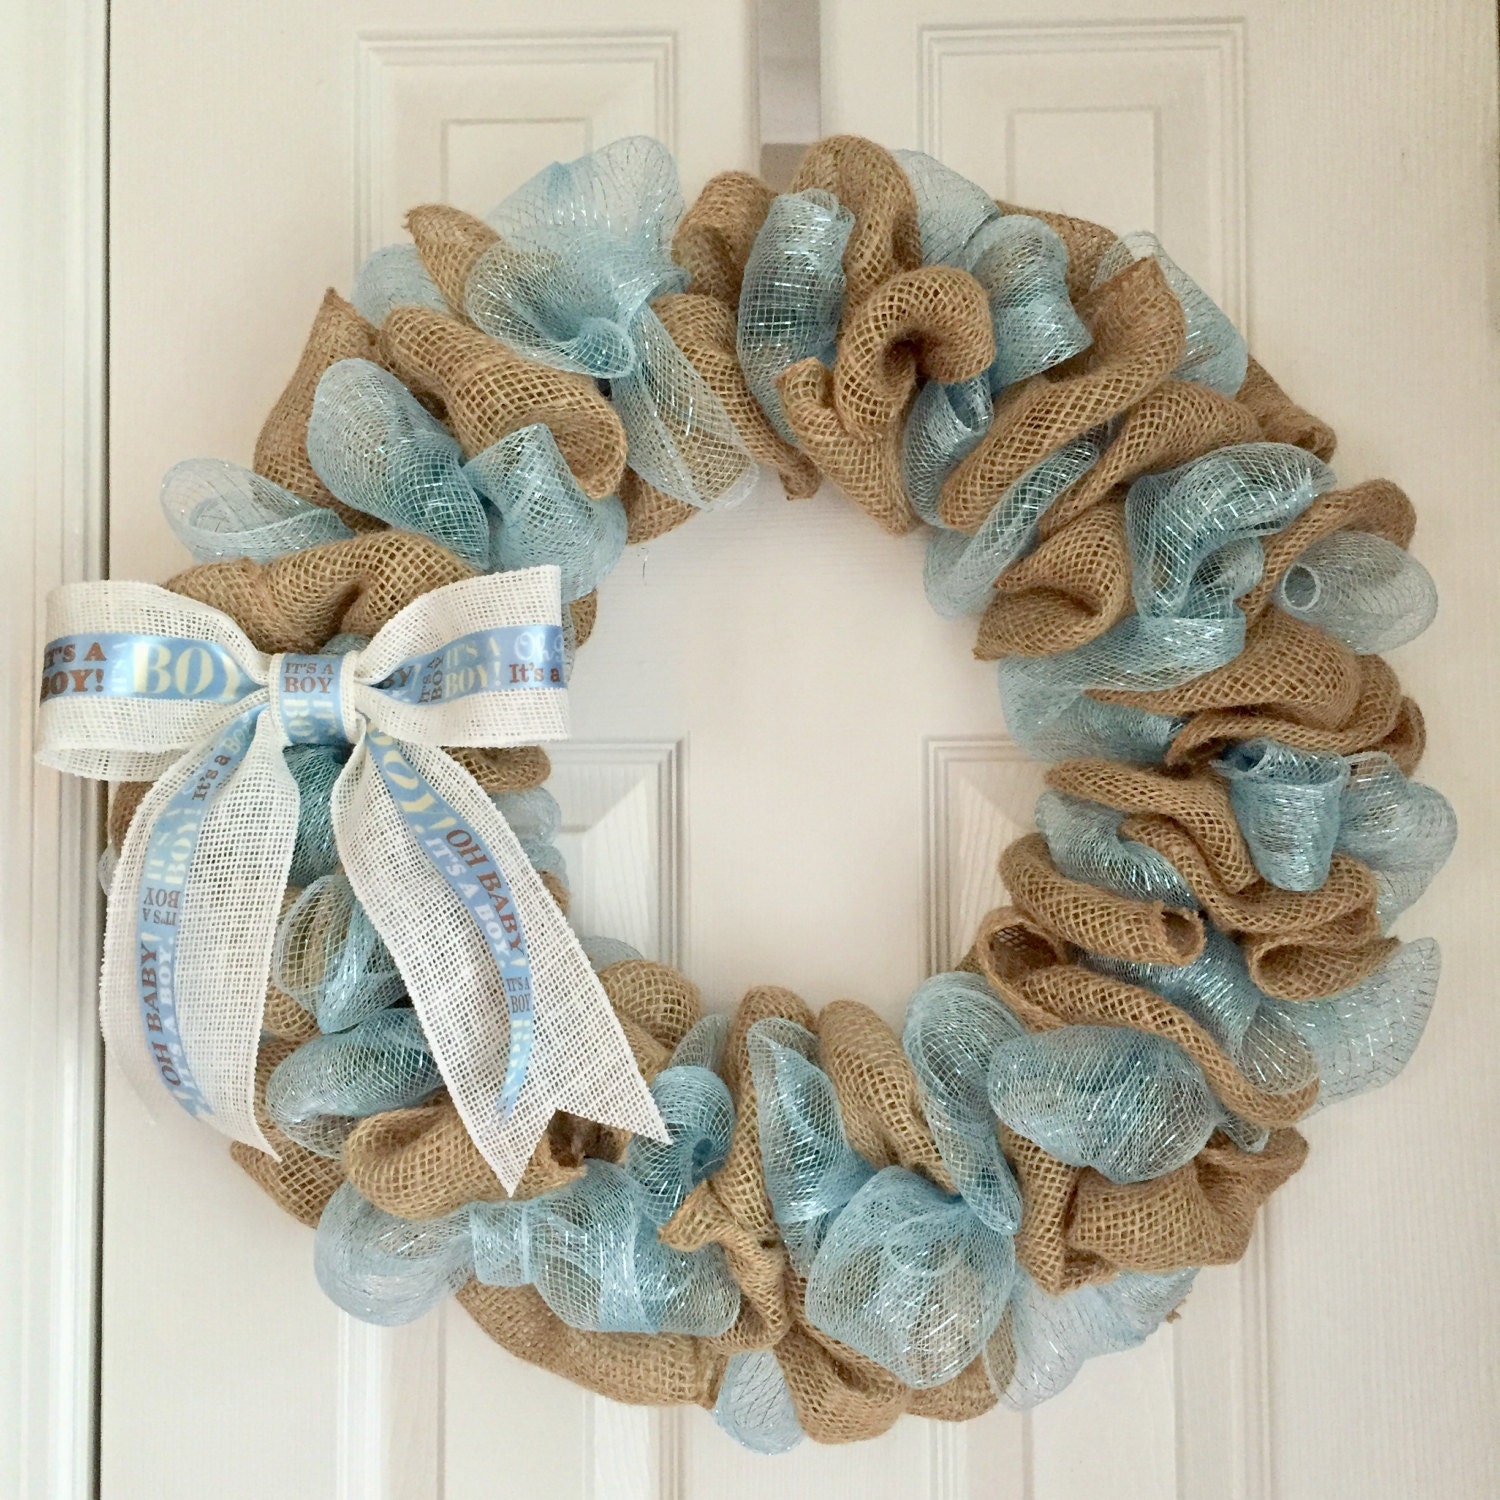 Baby Boy Wreath - Hospital Door Hanger - Baby Girl Wreath - Baby Wreath - Its a Boy Wreath - Its a Girl Wreath - Baby Announcement Gift